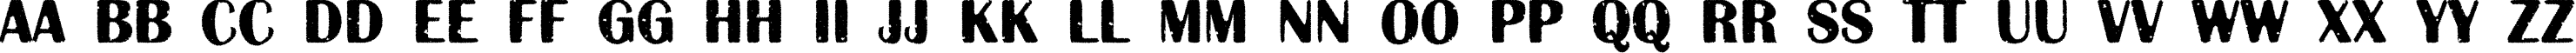 Пример написания английского алфавита шрифтом a_AlbionicTtlRg&Bt